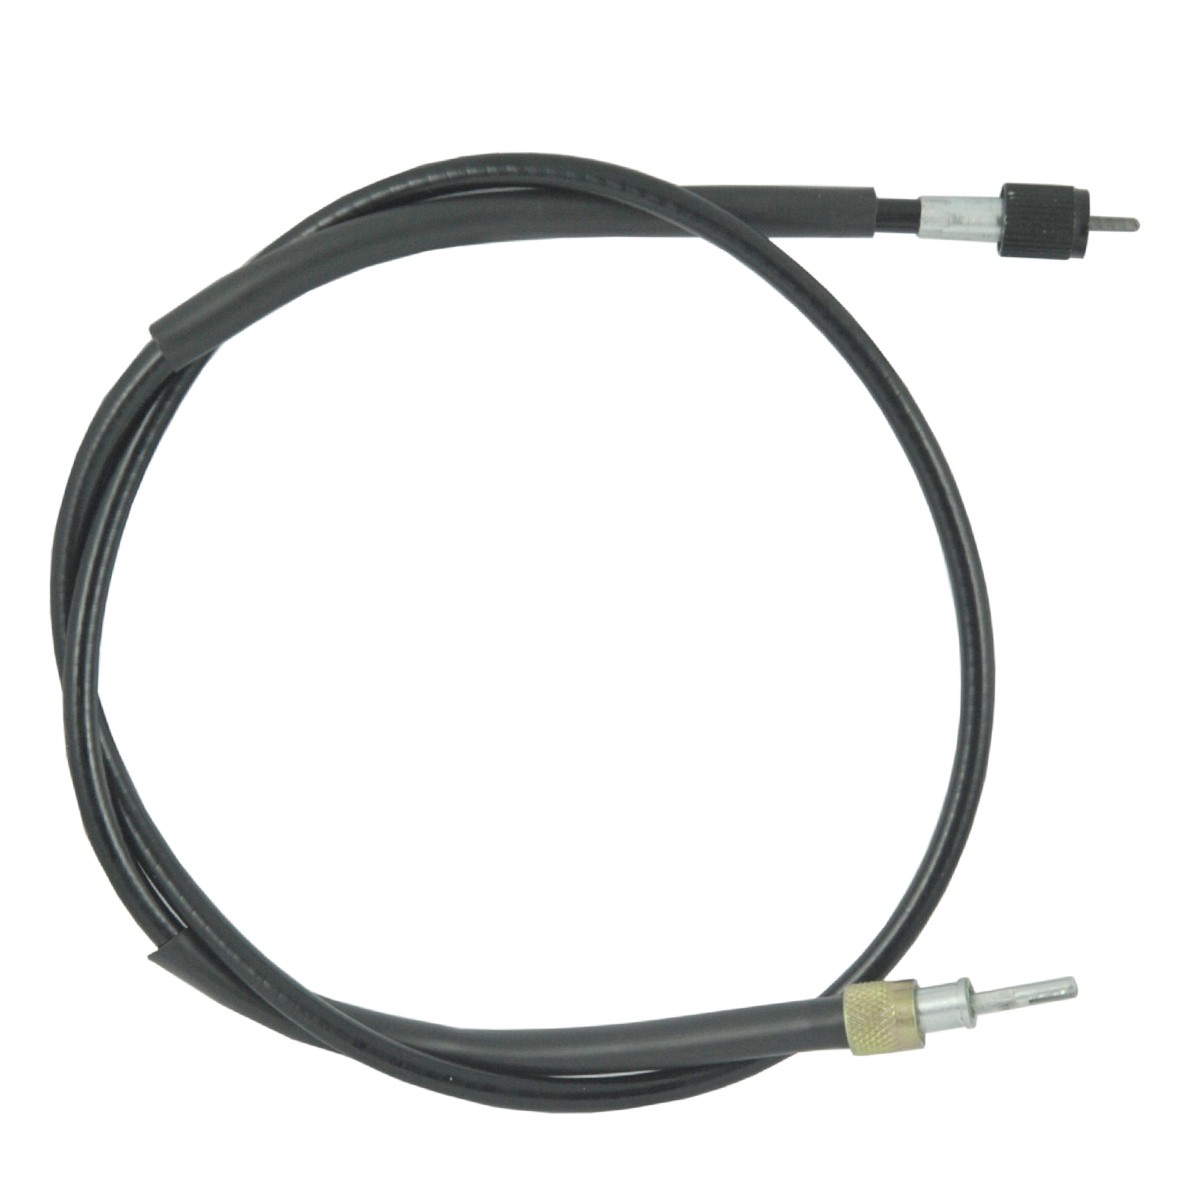 Cable contador 1095 mm Kubota L02/L1802/L2002/L2202/L2402 / 38240-34654 / OBMT16